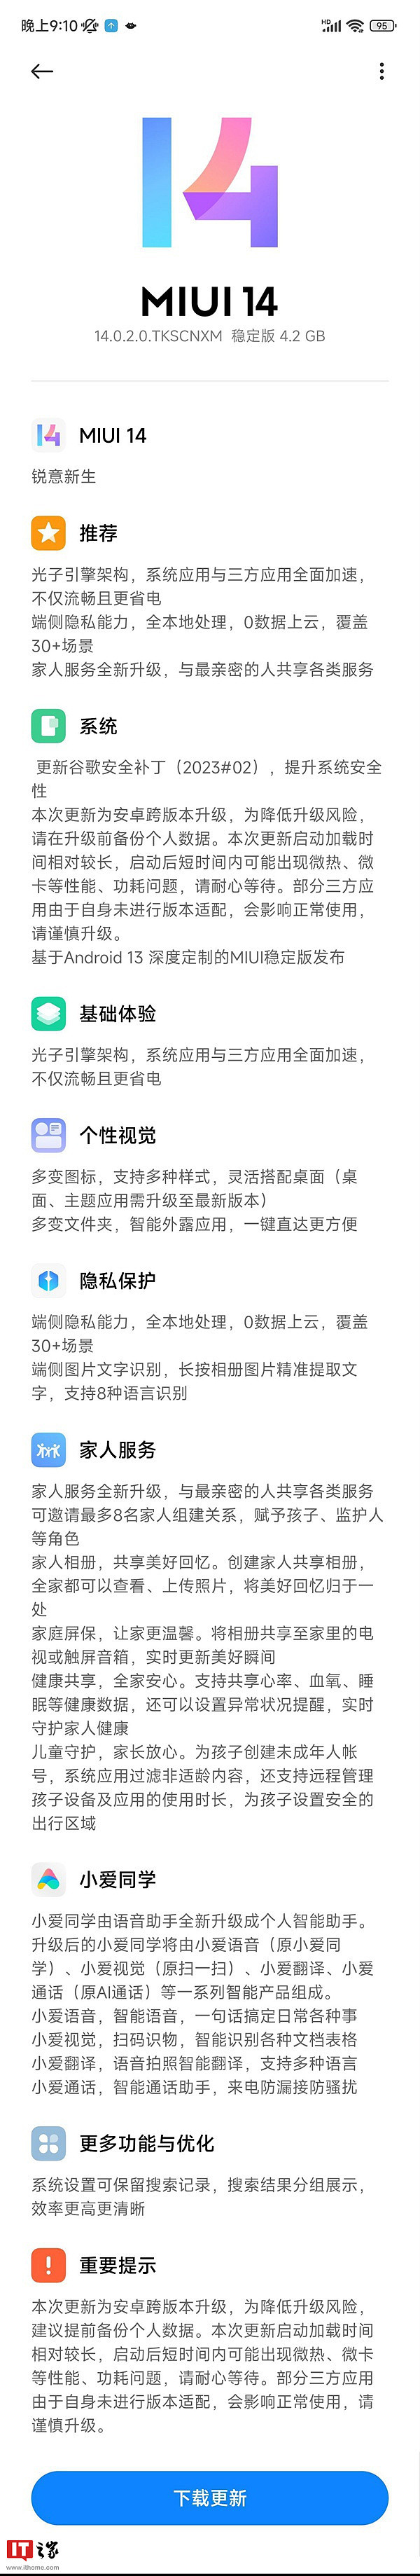 小米 Redmi Note 10/11 SE 手机开始推送 MIUI 14 稳定版更新 - 2